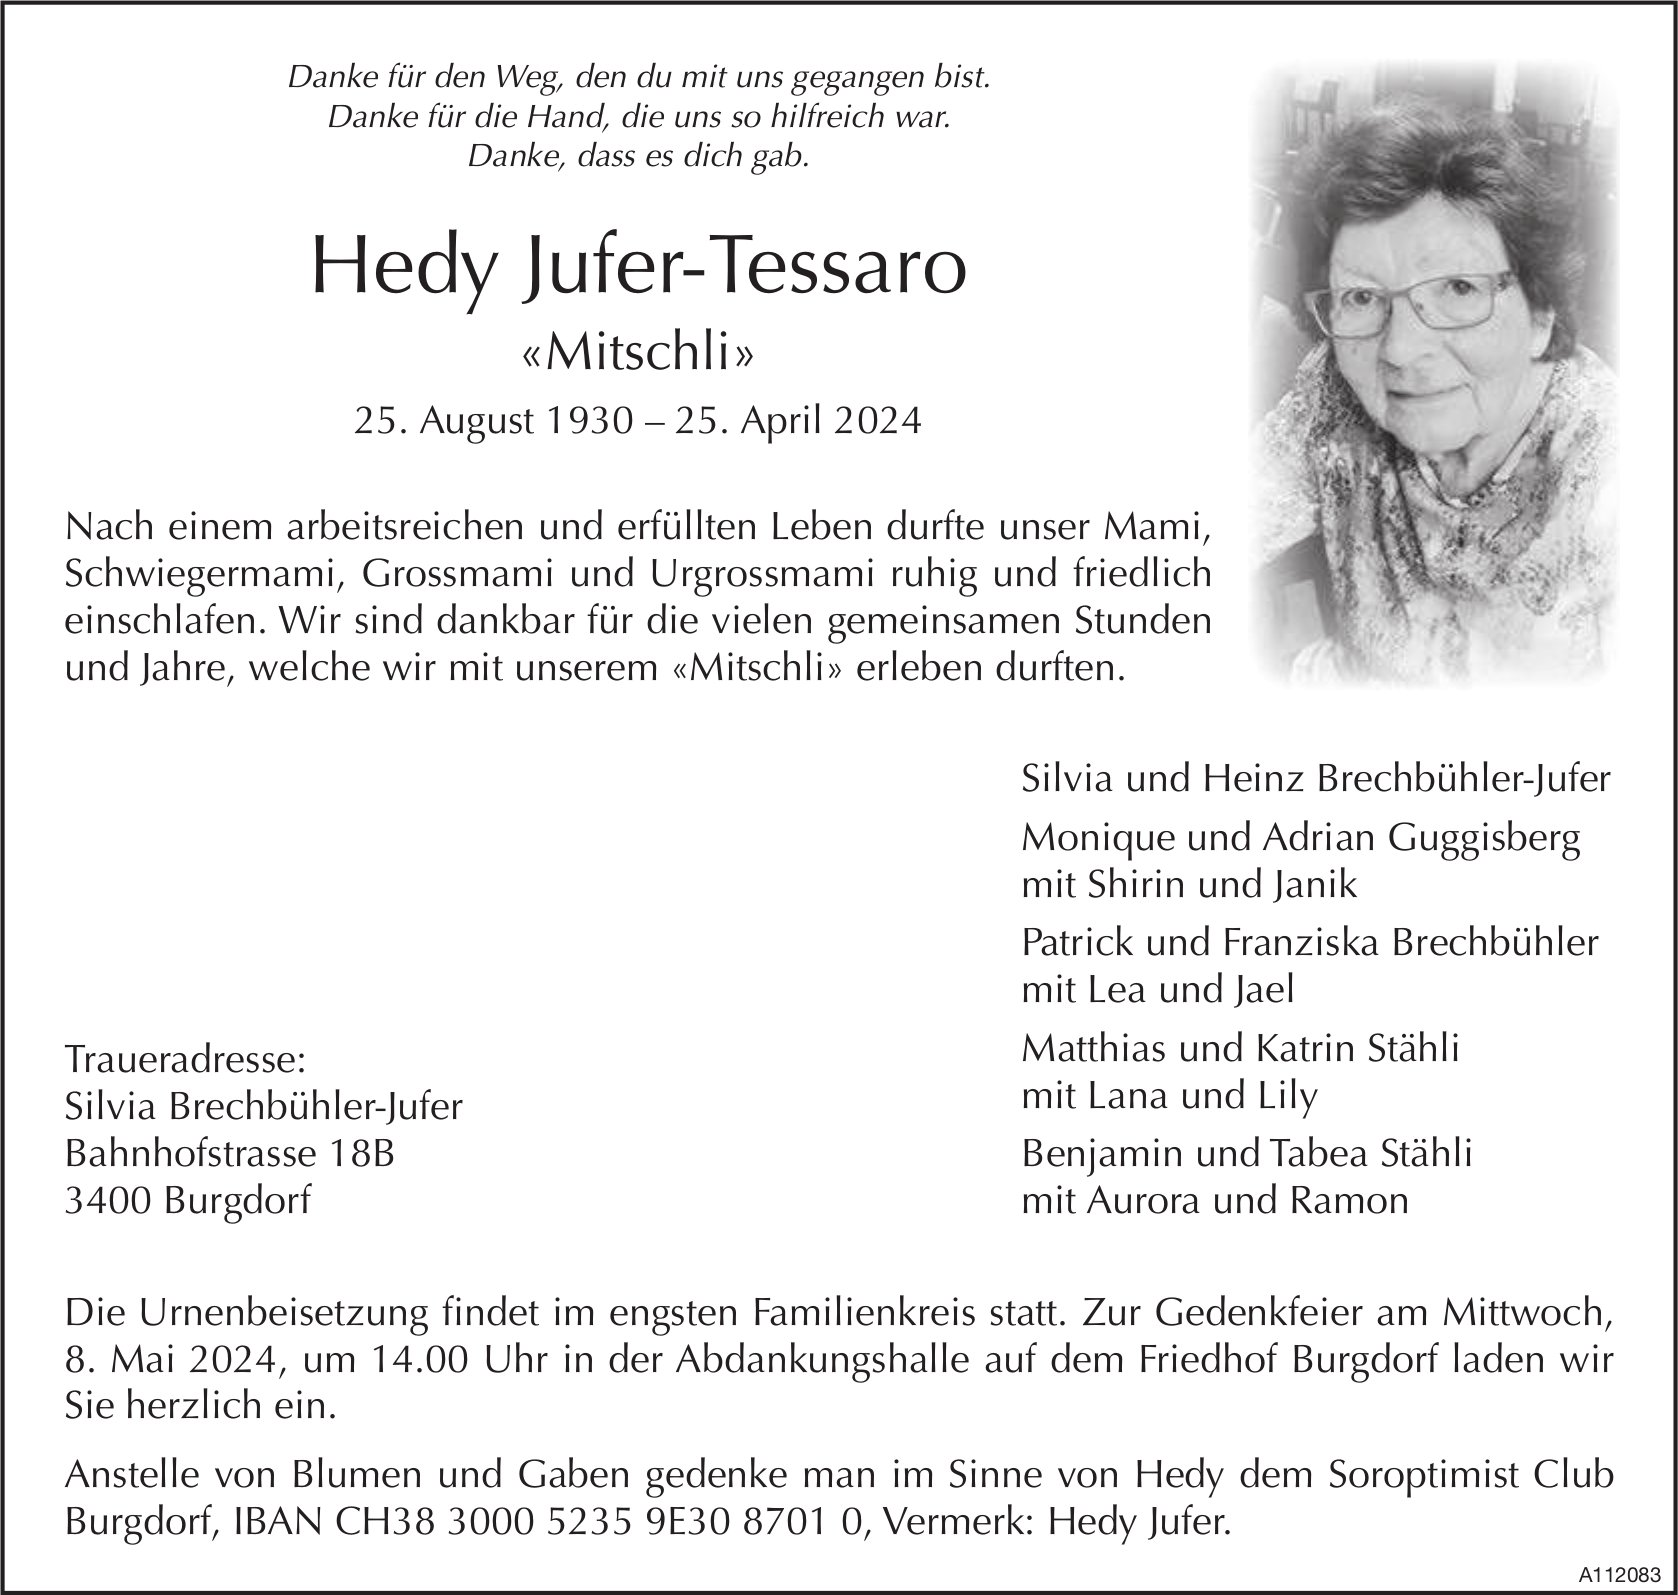 Hedy Jufer-Tessaro, April 2024 / TA